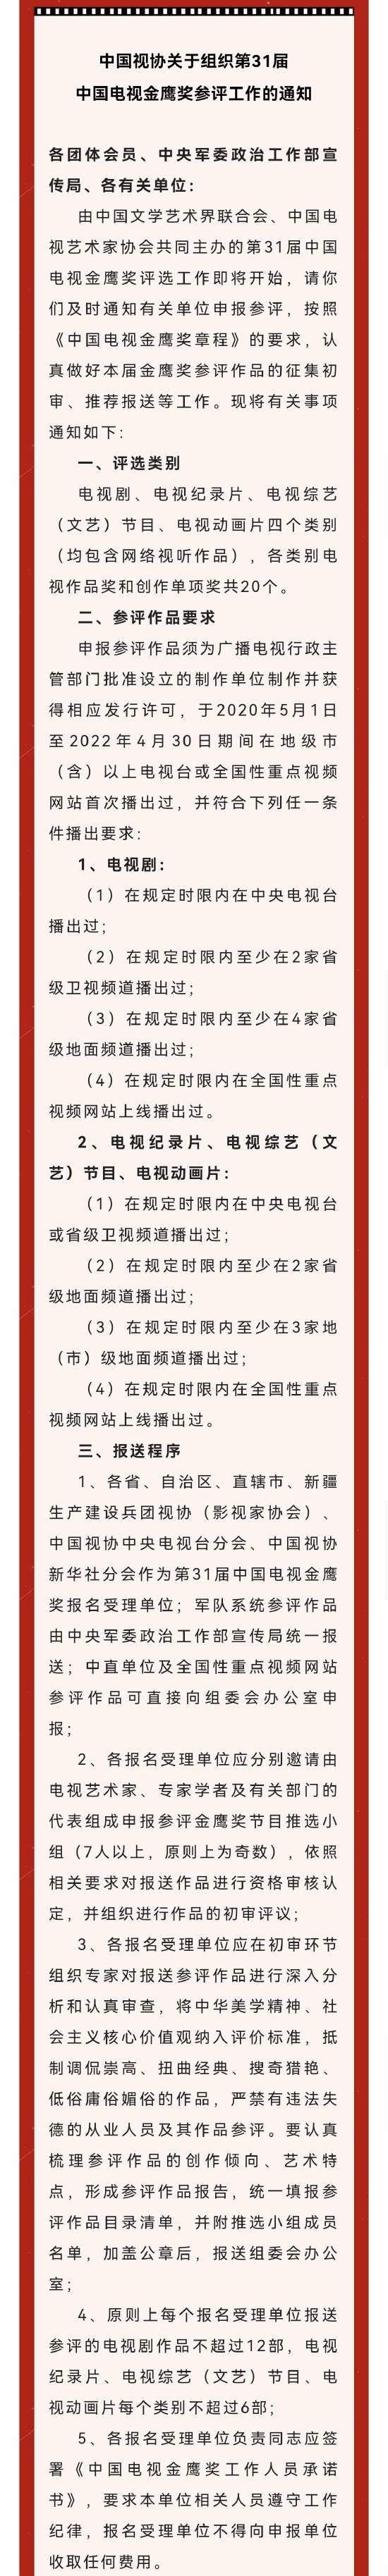 中国视协发布关于组织第31届中国电视金鹰奖参评工作的通知